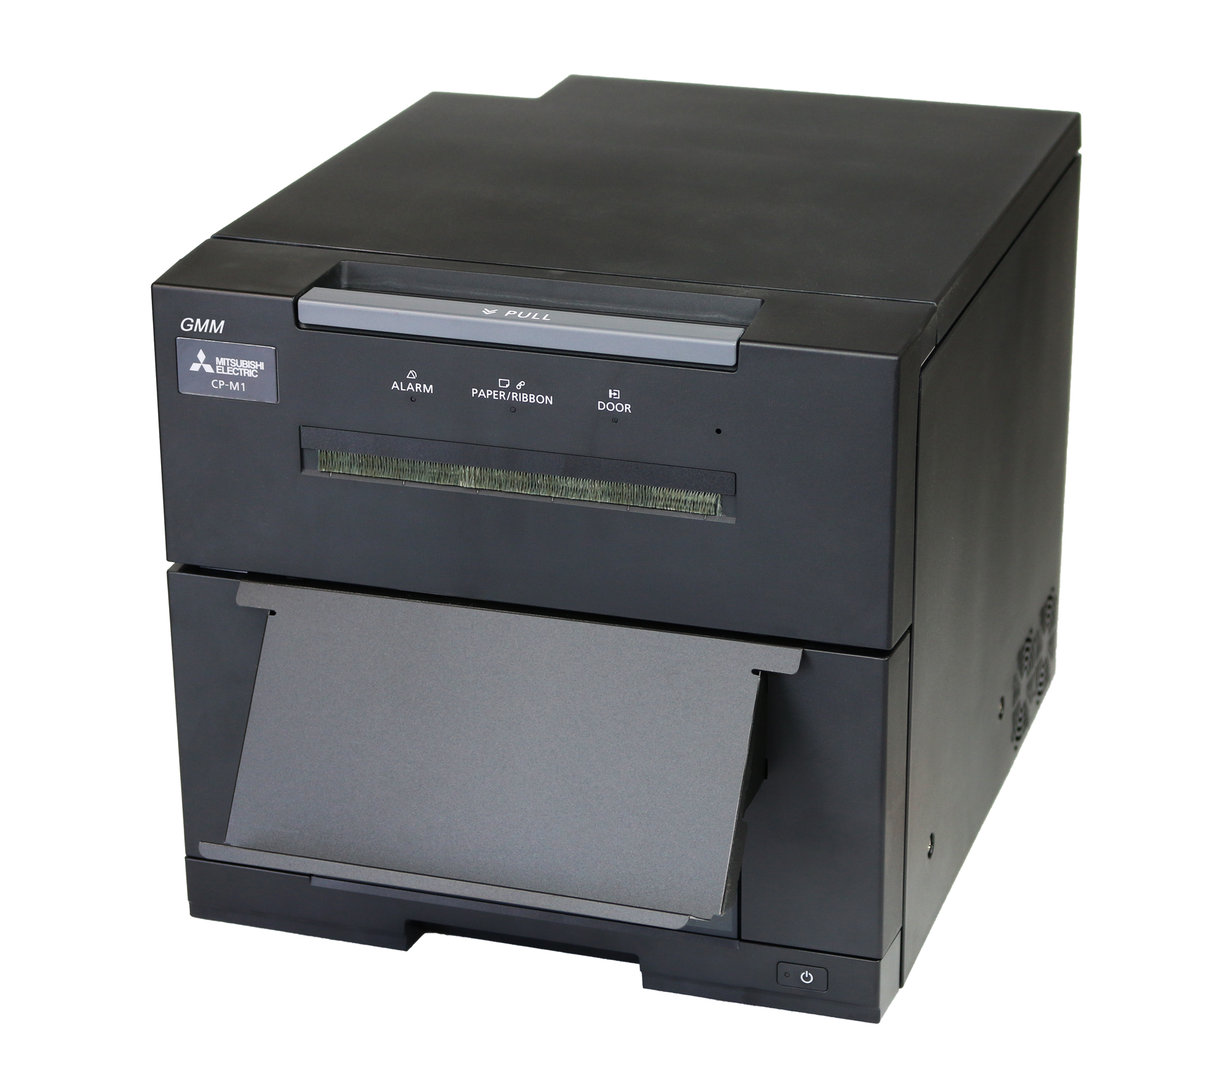 Printer Driver for CP-M1E - Windows 7/8/10 (32/64-bit)